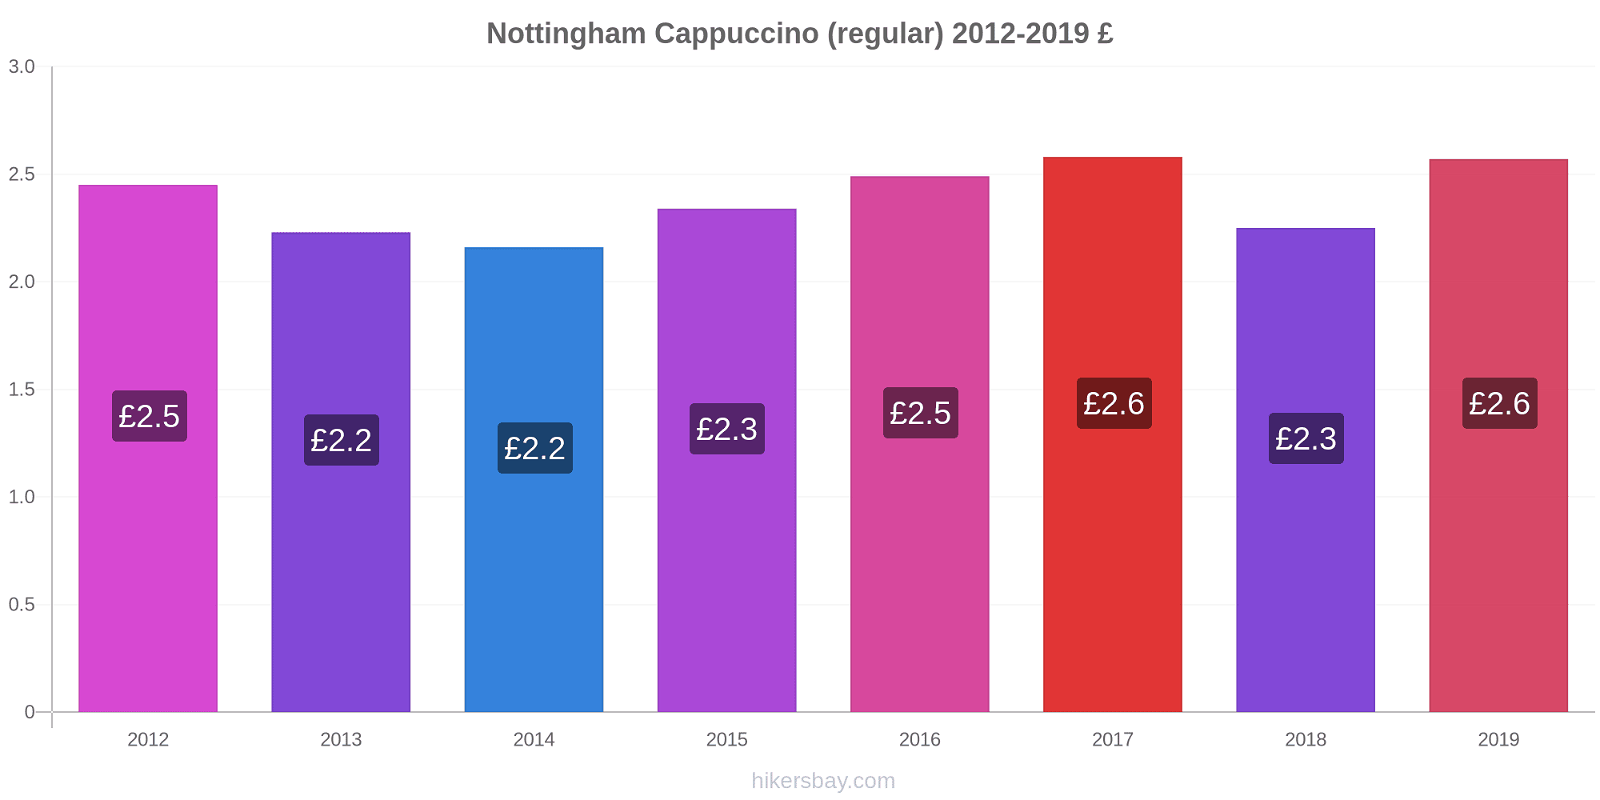 Nottingham variação de preço Capuccino (regular) hikersbay.com